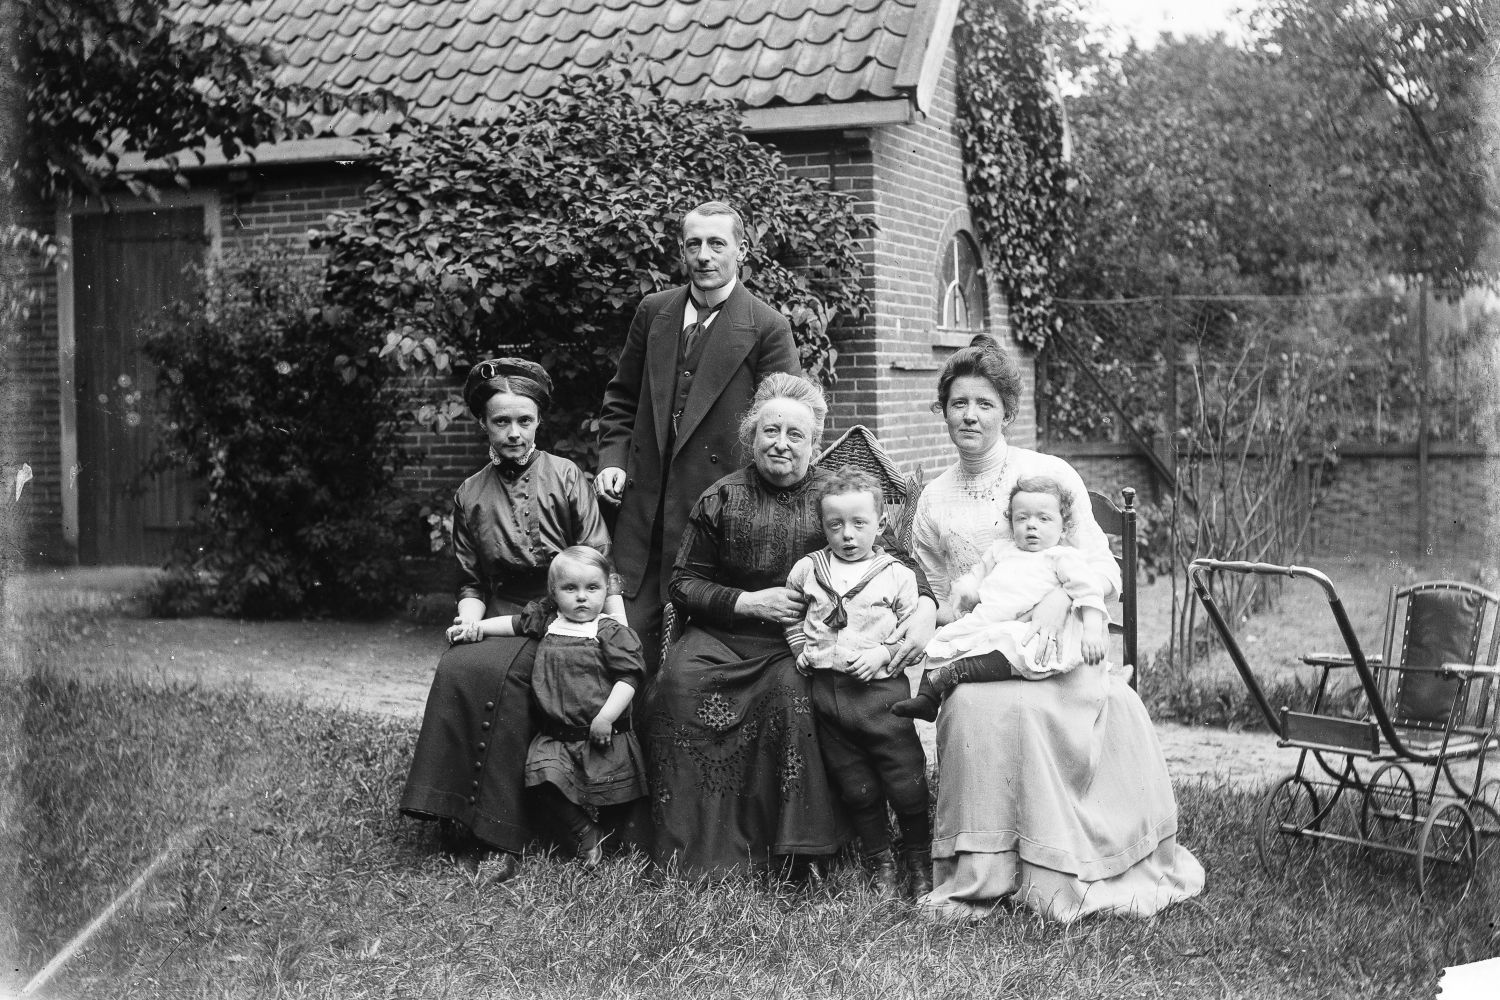 Vier volwassenen en drie kleine kinderen poseren buiten in het gras voor een schuur voor de fotograaf. De drie vrouwen zitten op een stoel. Achter hen staat een man. Op de voorgrond staan en zitten de kinderen. Rechts staat een kinderwagen.